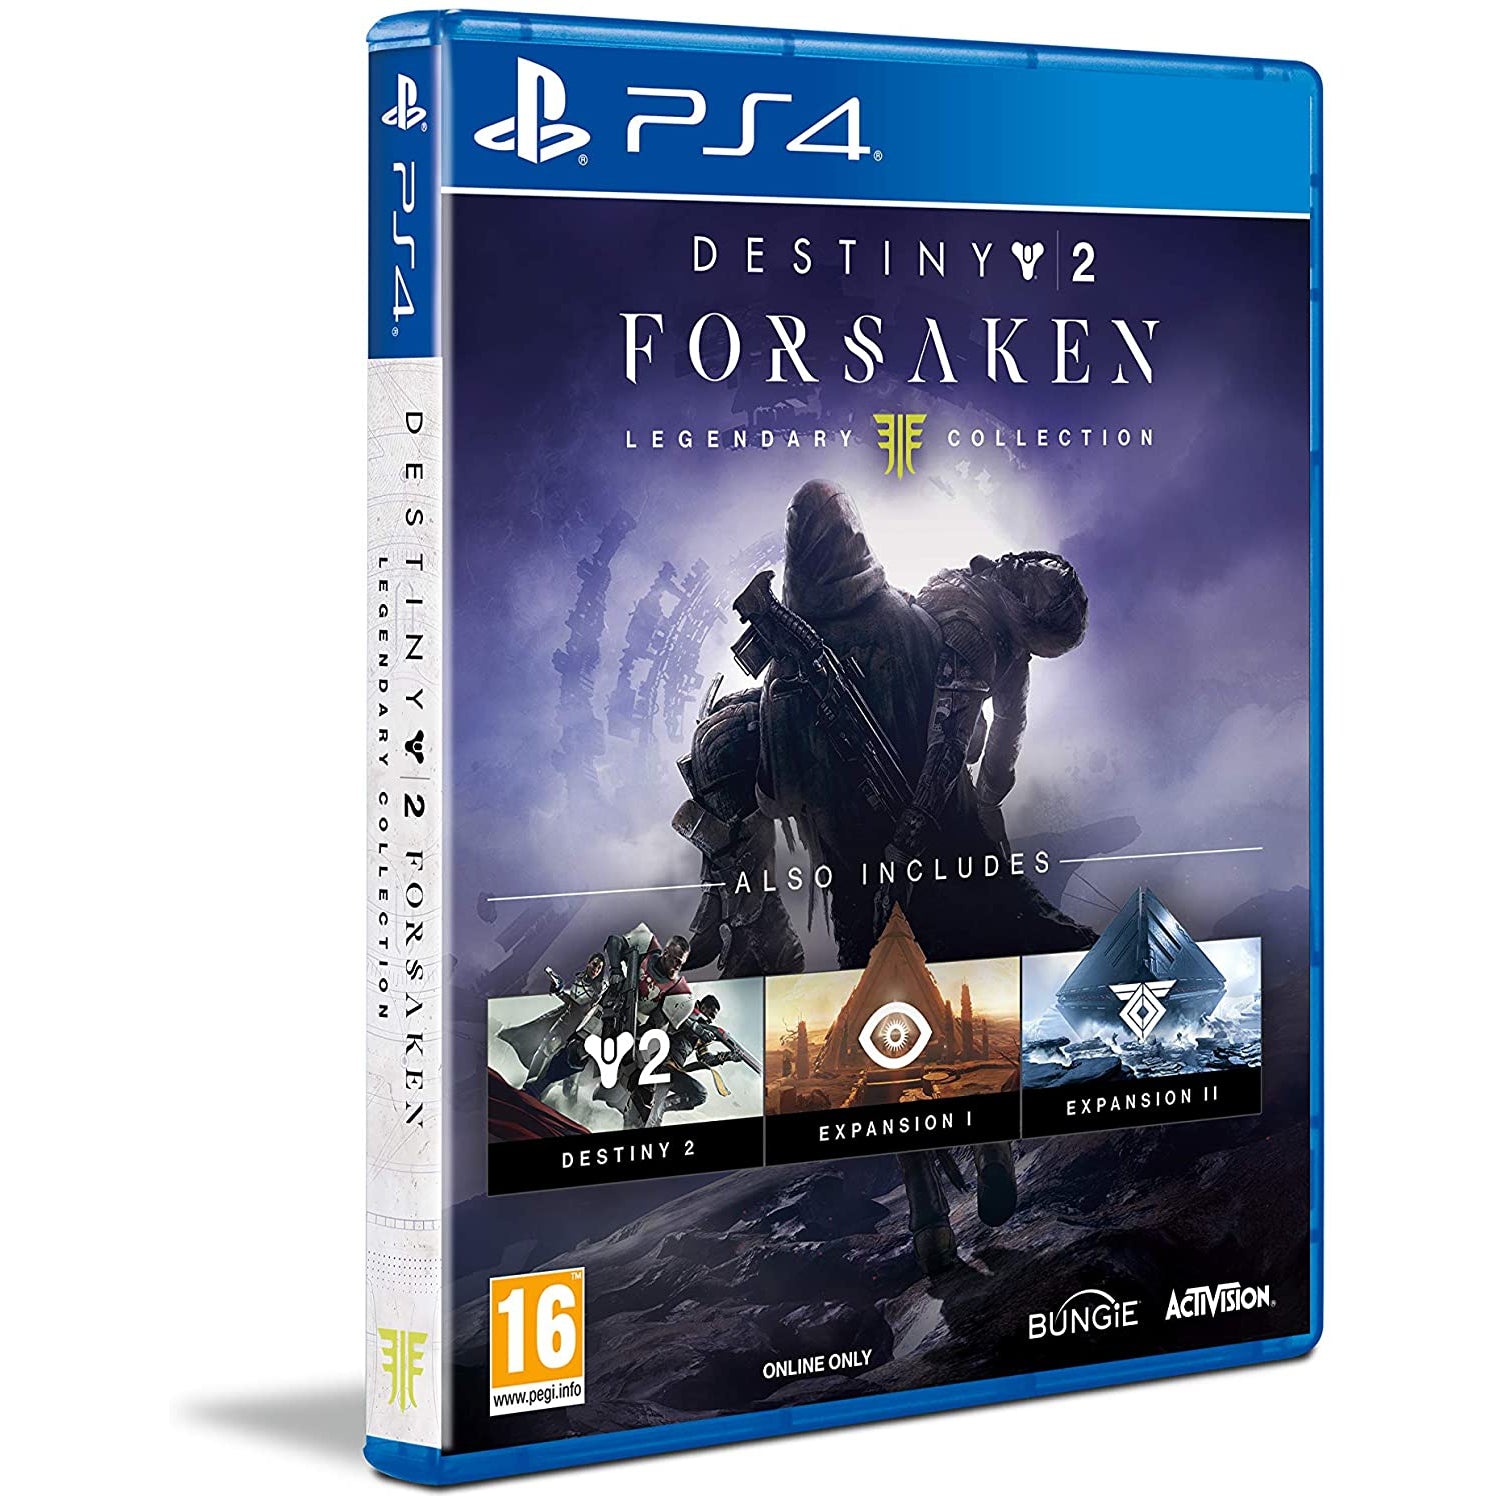 Destiny 2 Forsaken - Legendary Collection For Playstation 4